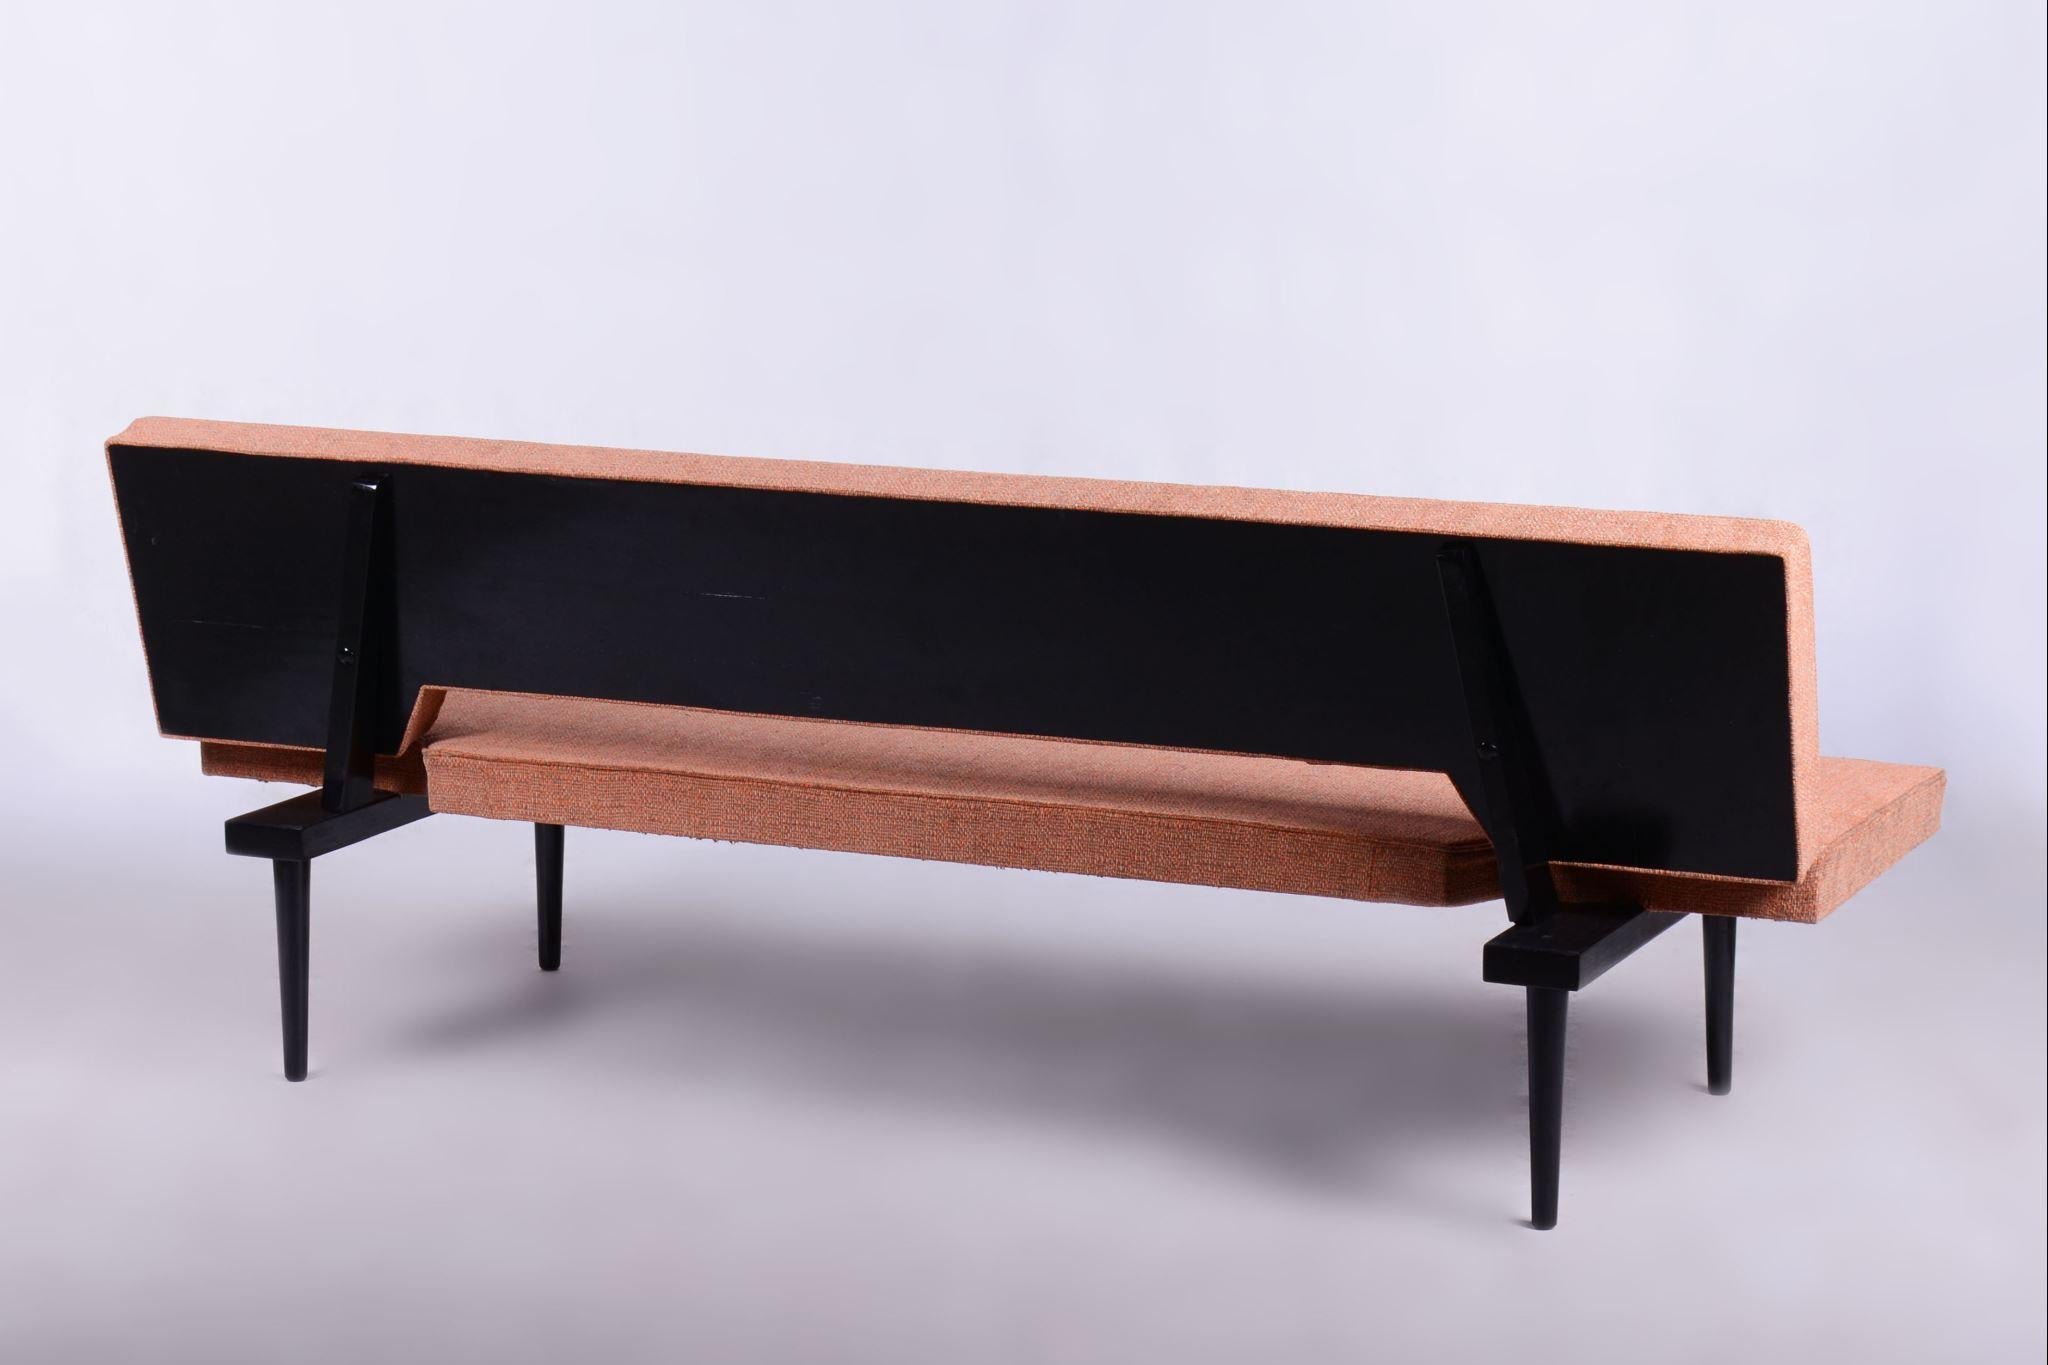 Mid-Century Modern Restored Midcentury Sofa, Miroslav Navratil, Lacquered Wood, Czechia, 1960s For Sale